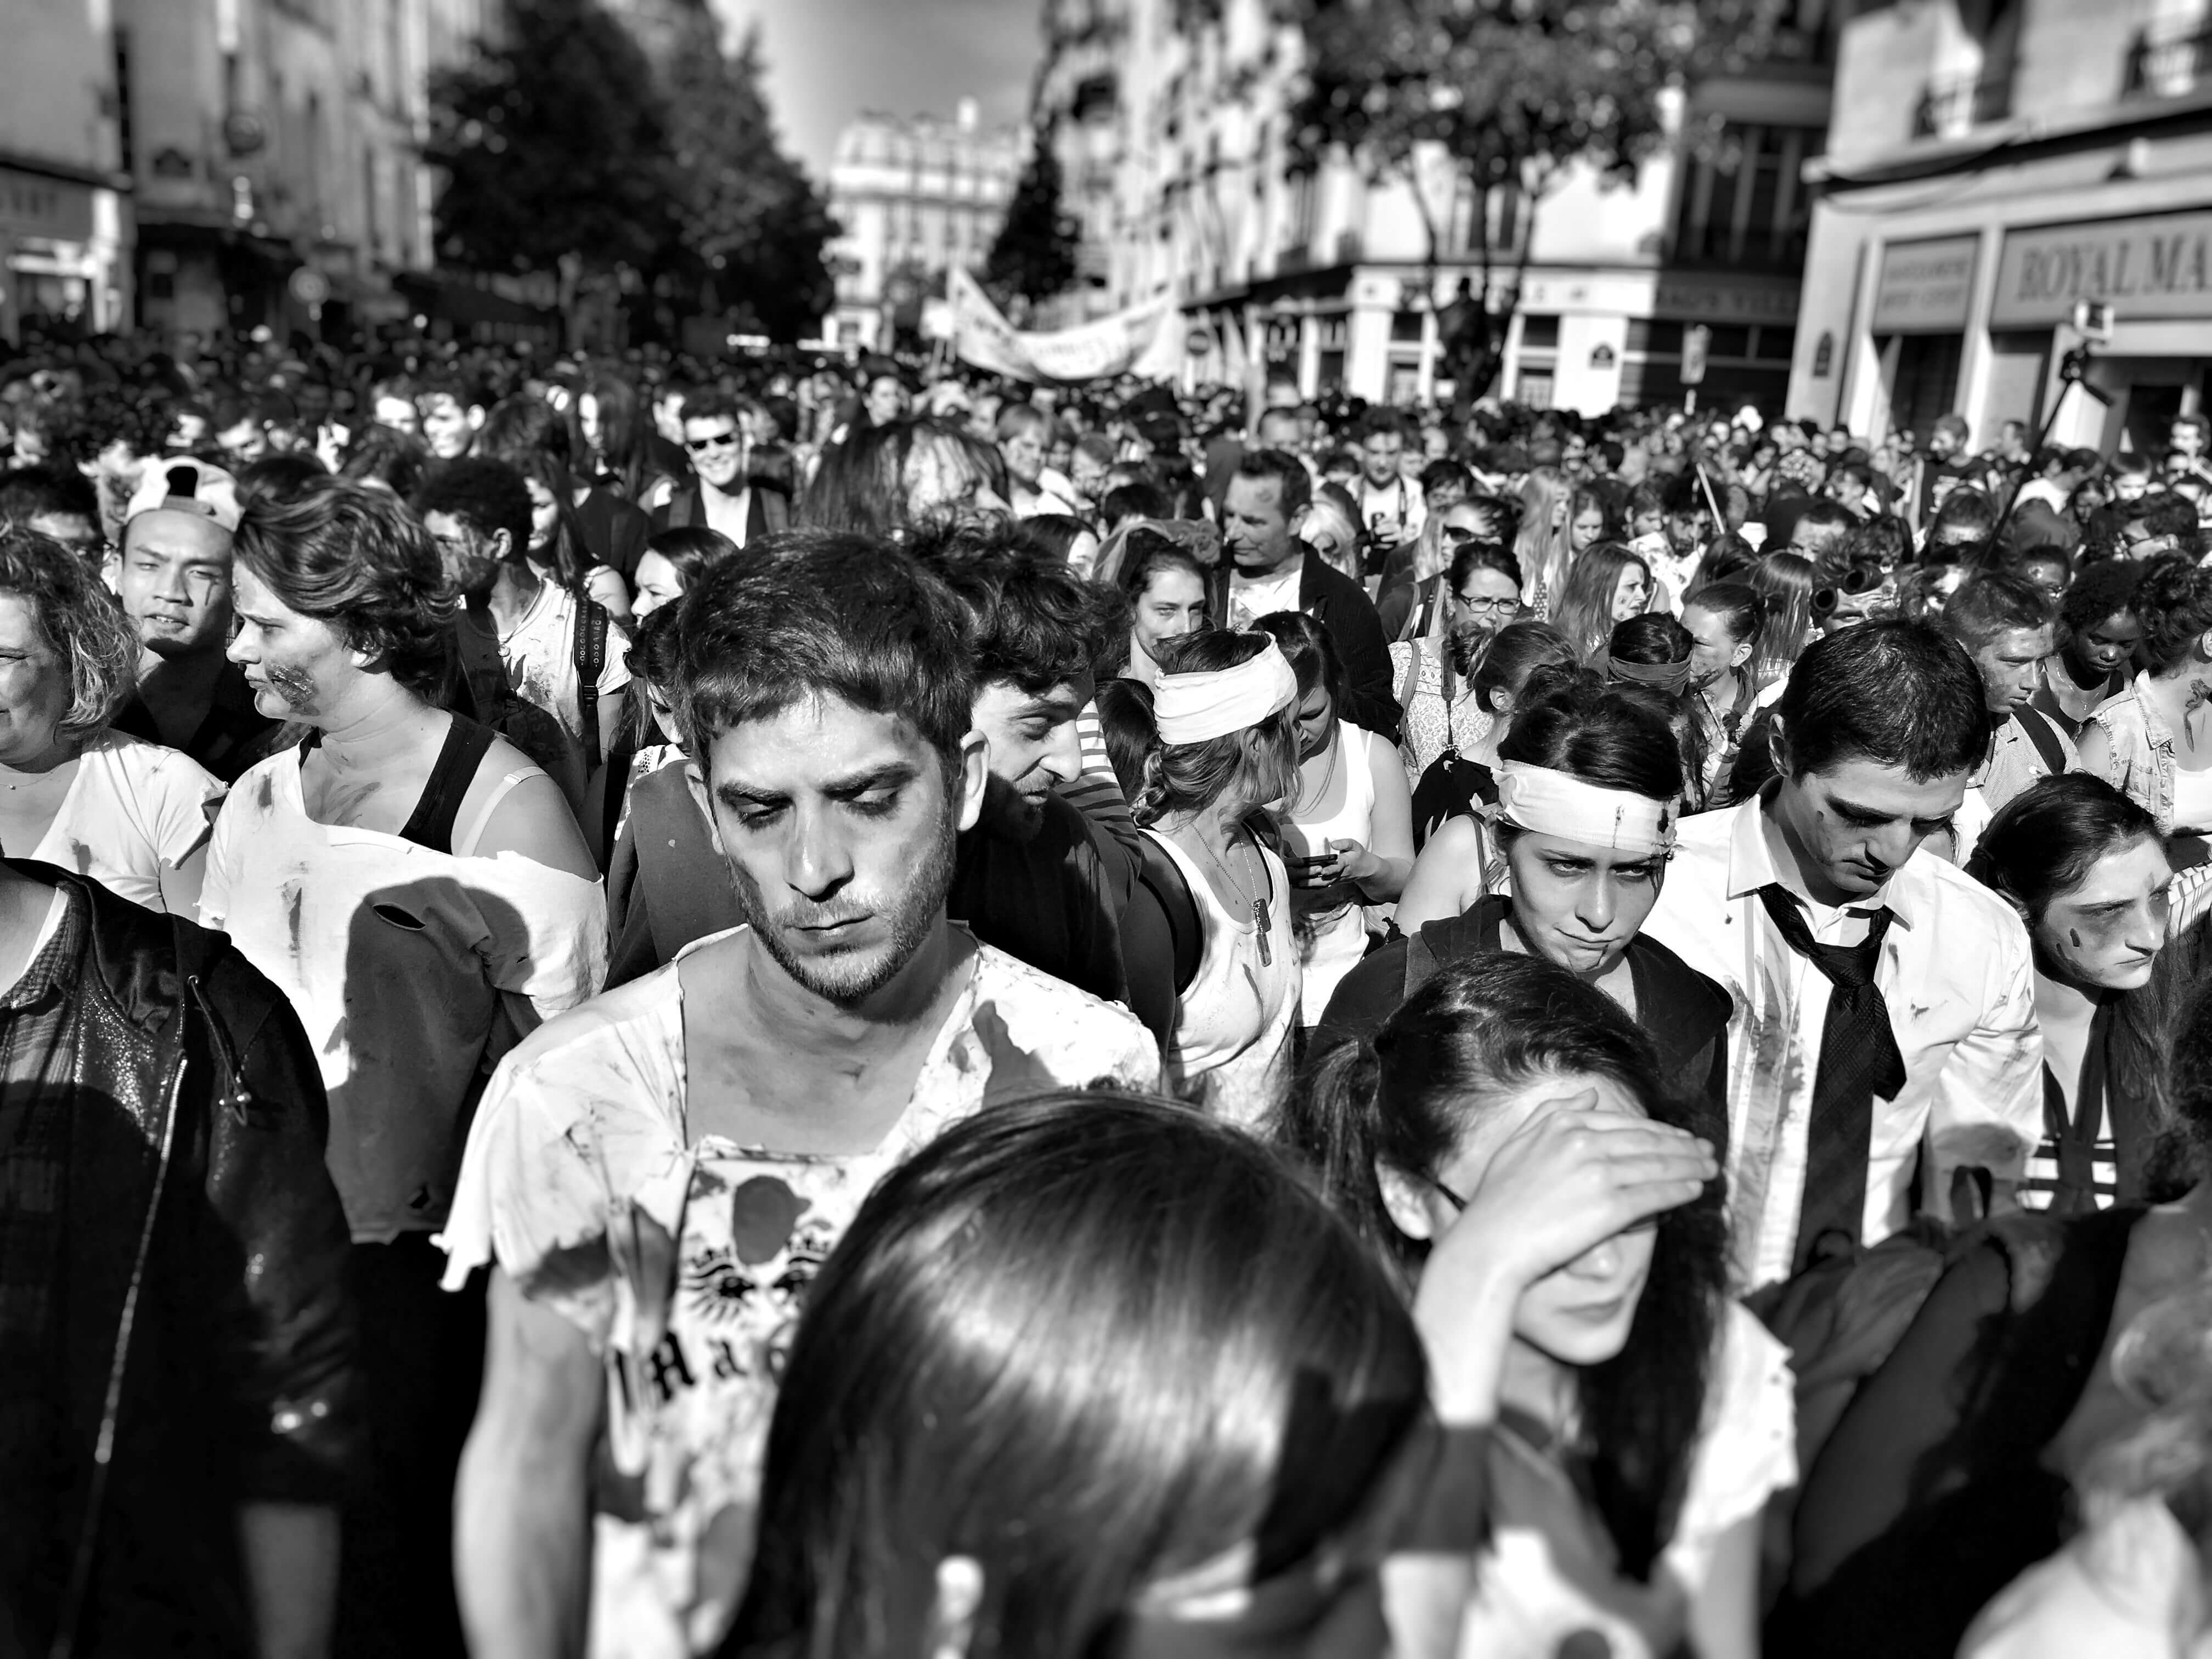 The Paris Zombie March